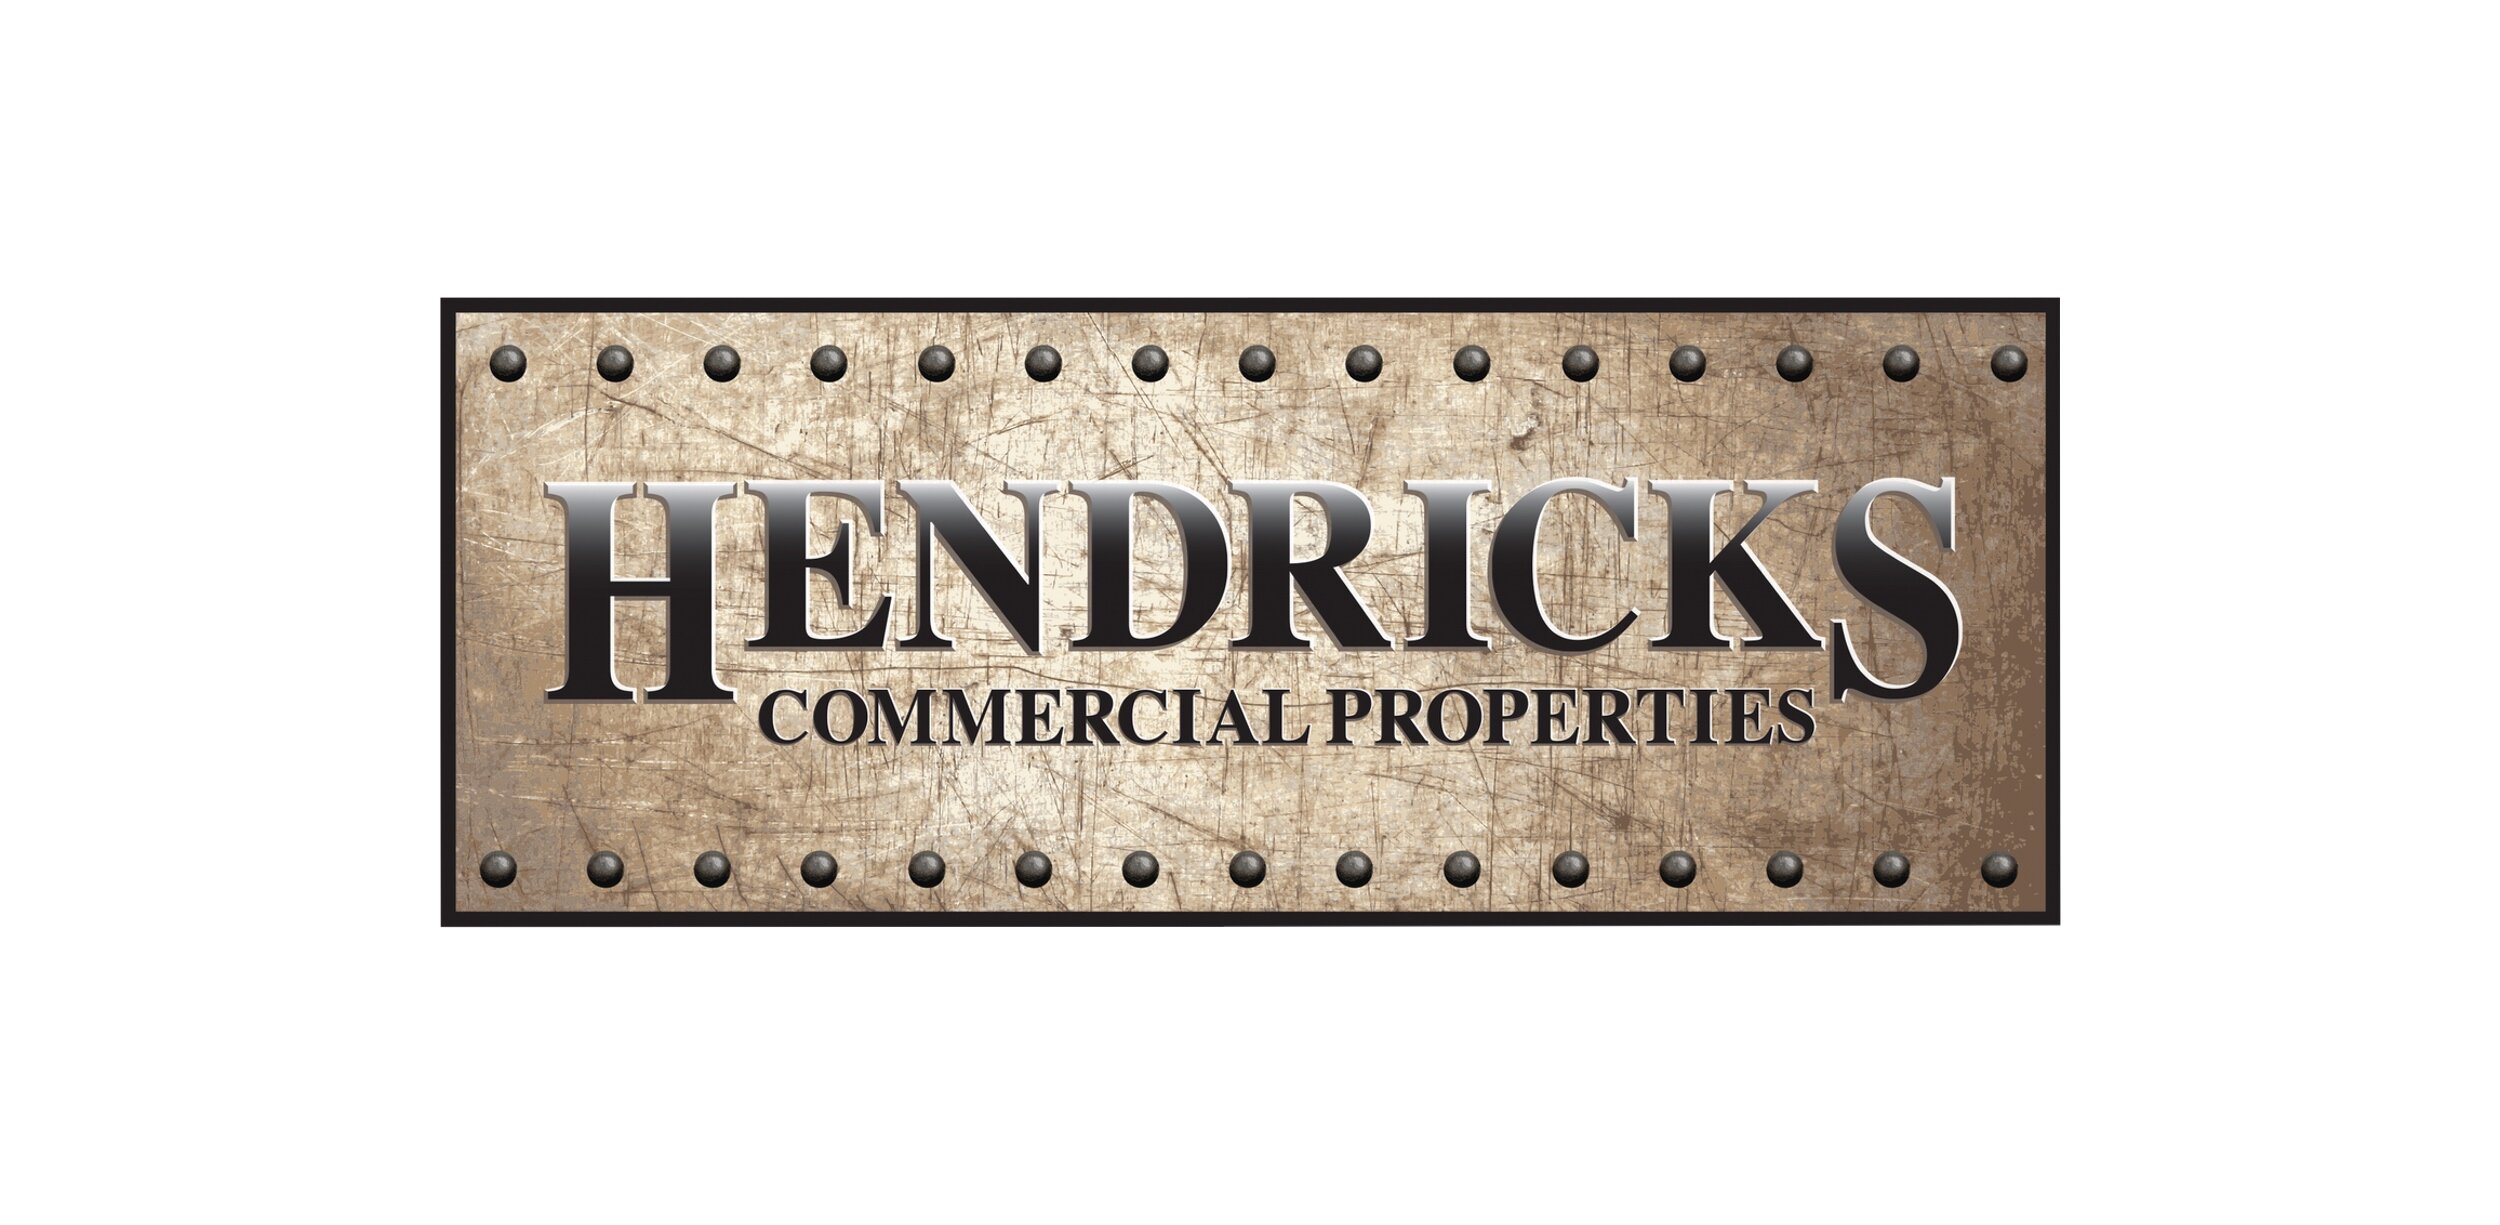 Hendricks Commercial Properties Wisconcin USA